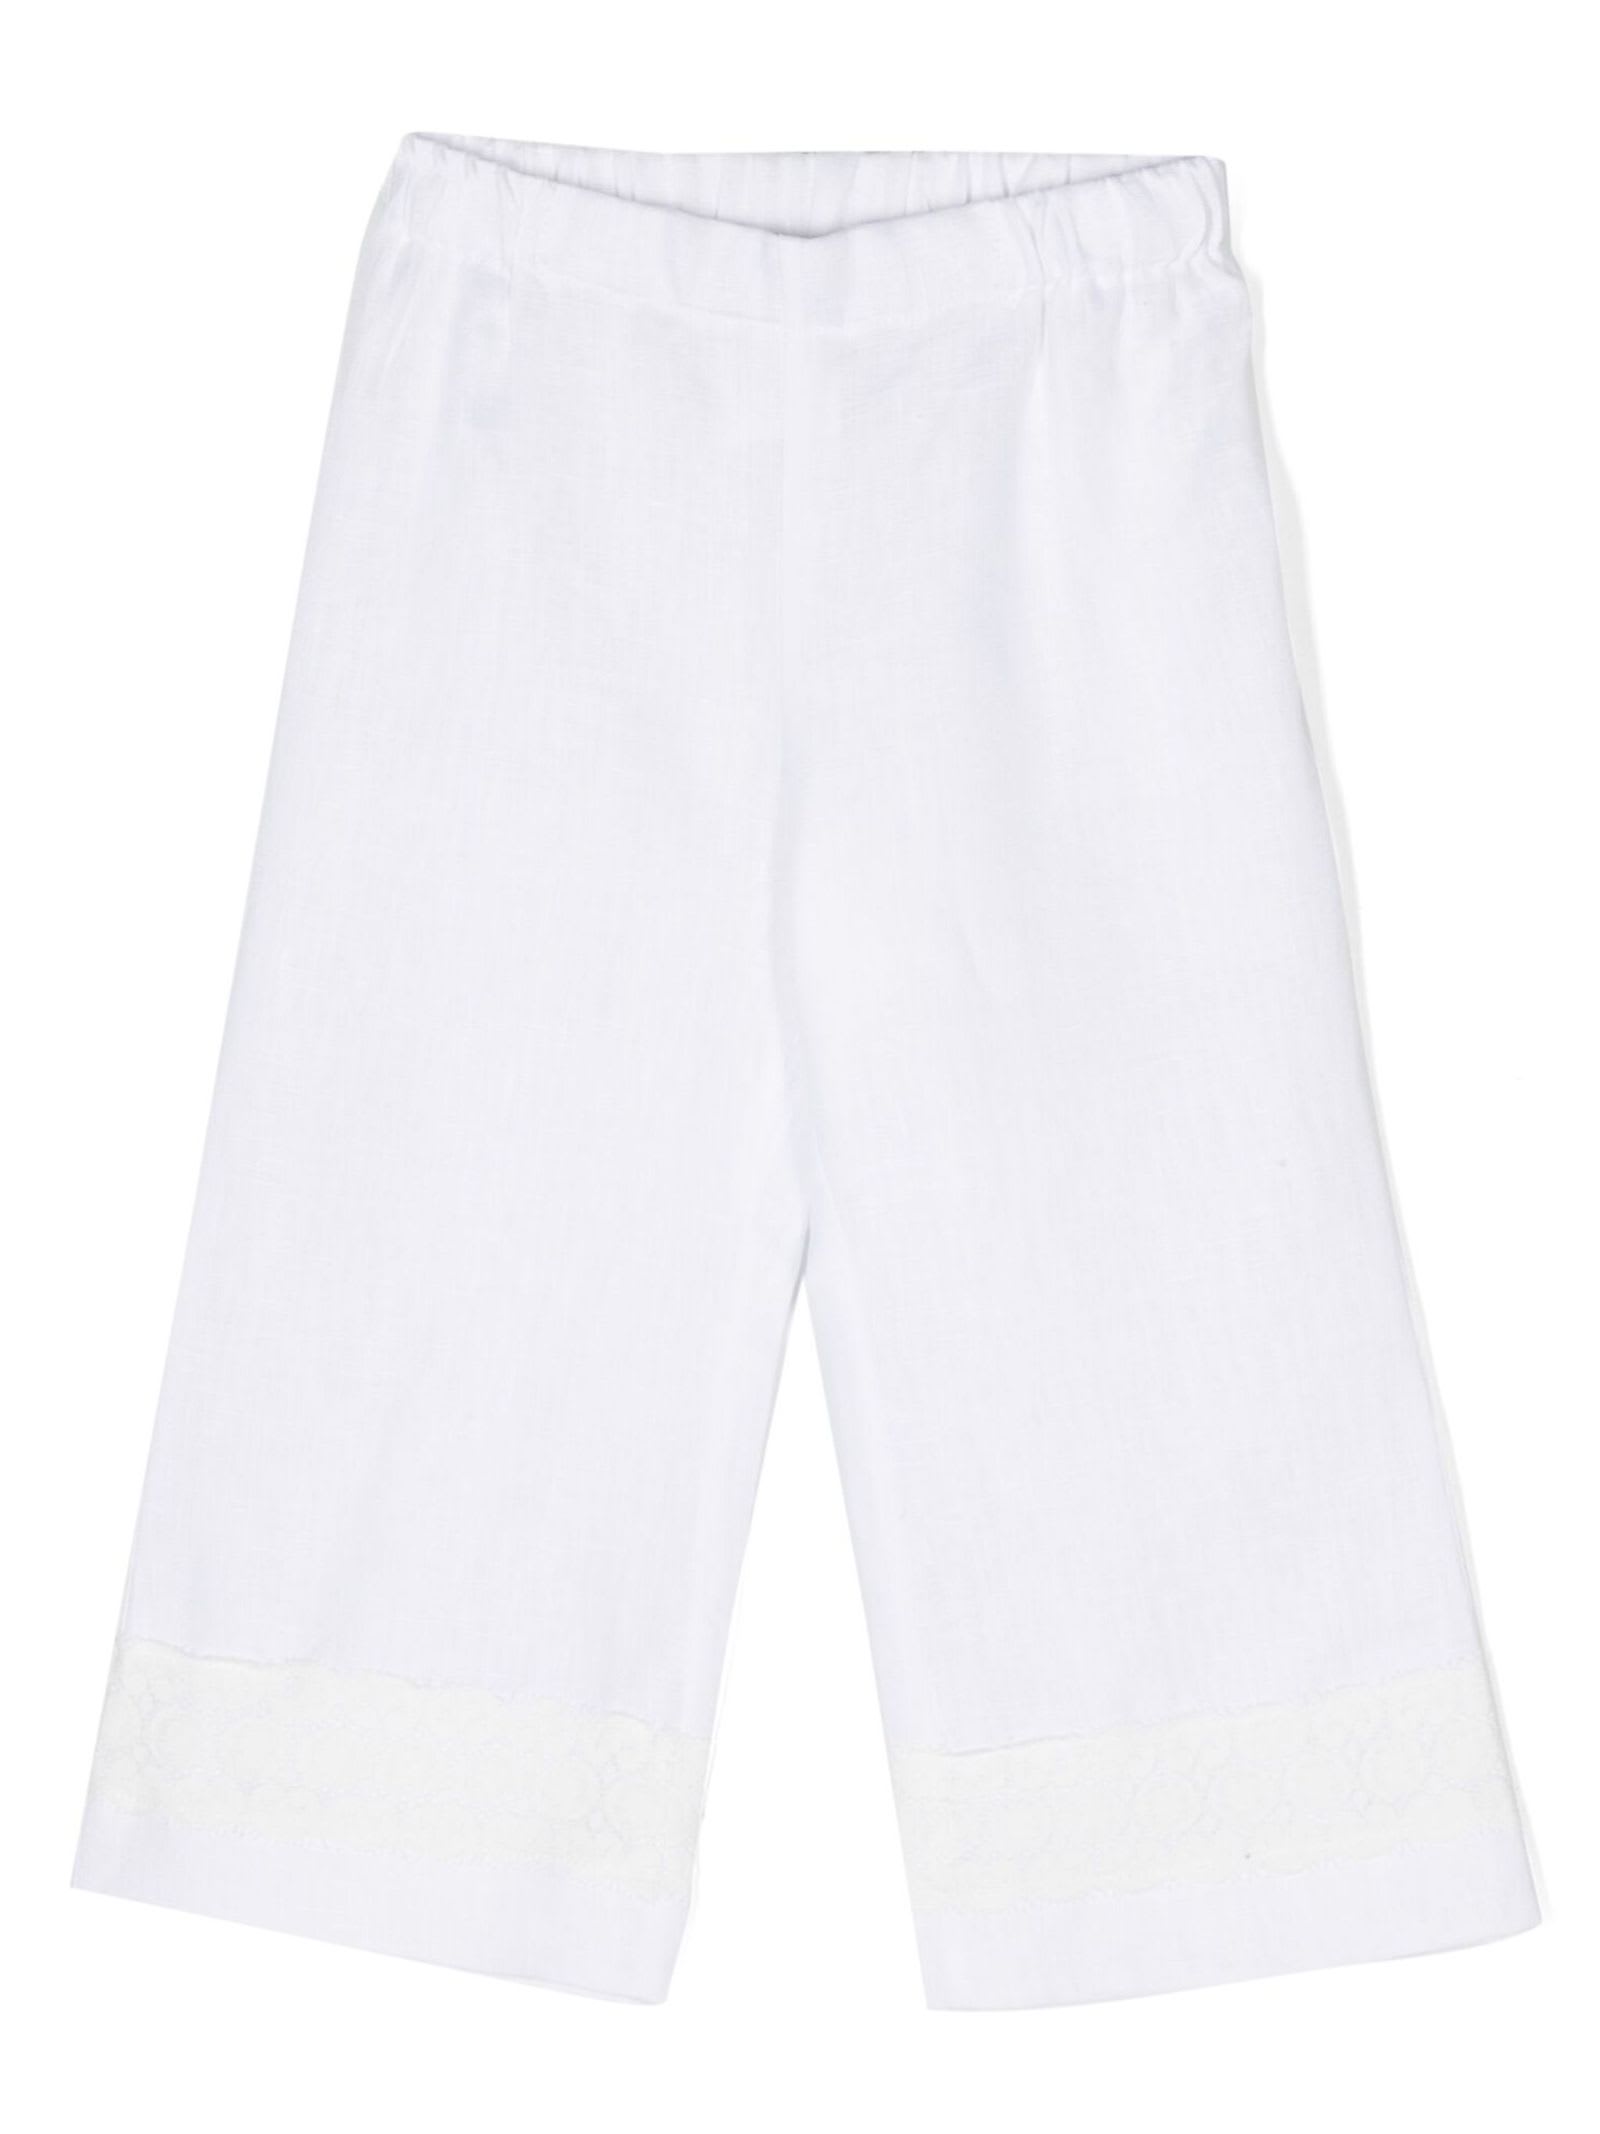 Shop La Stupenderia Trousers White